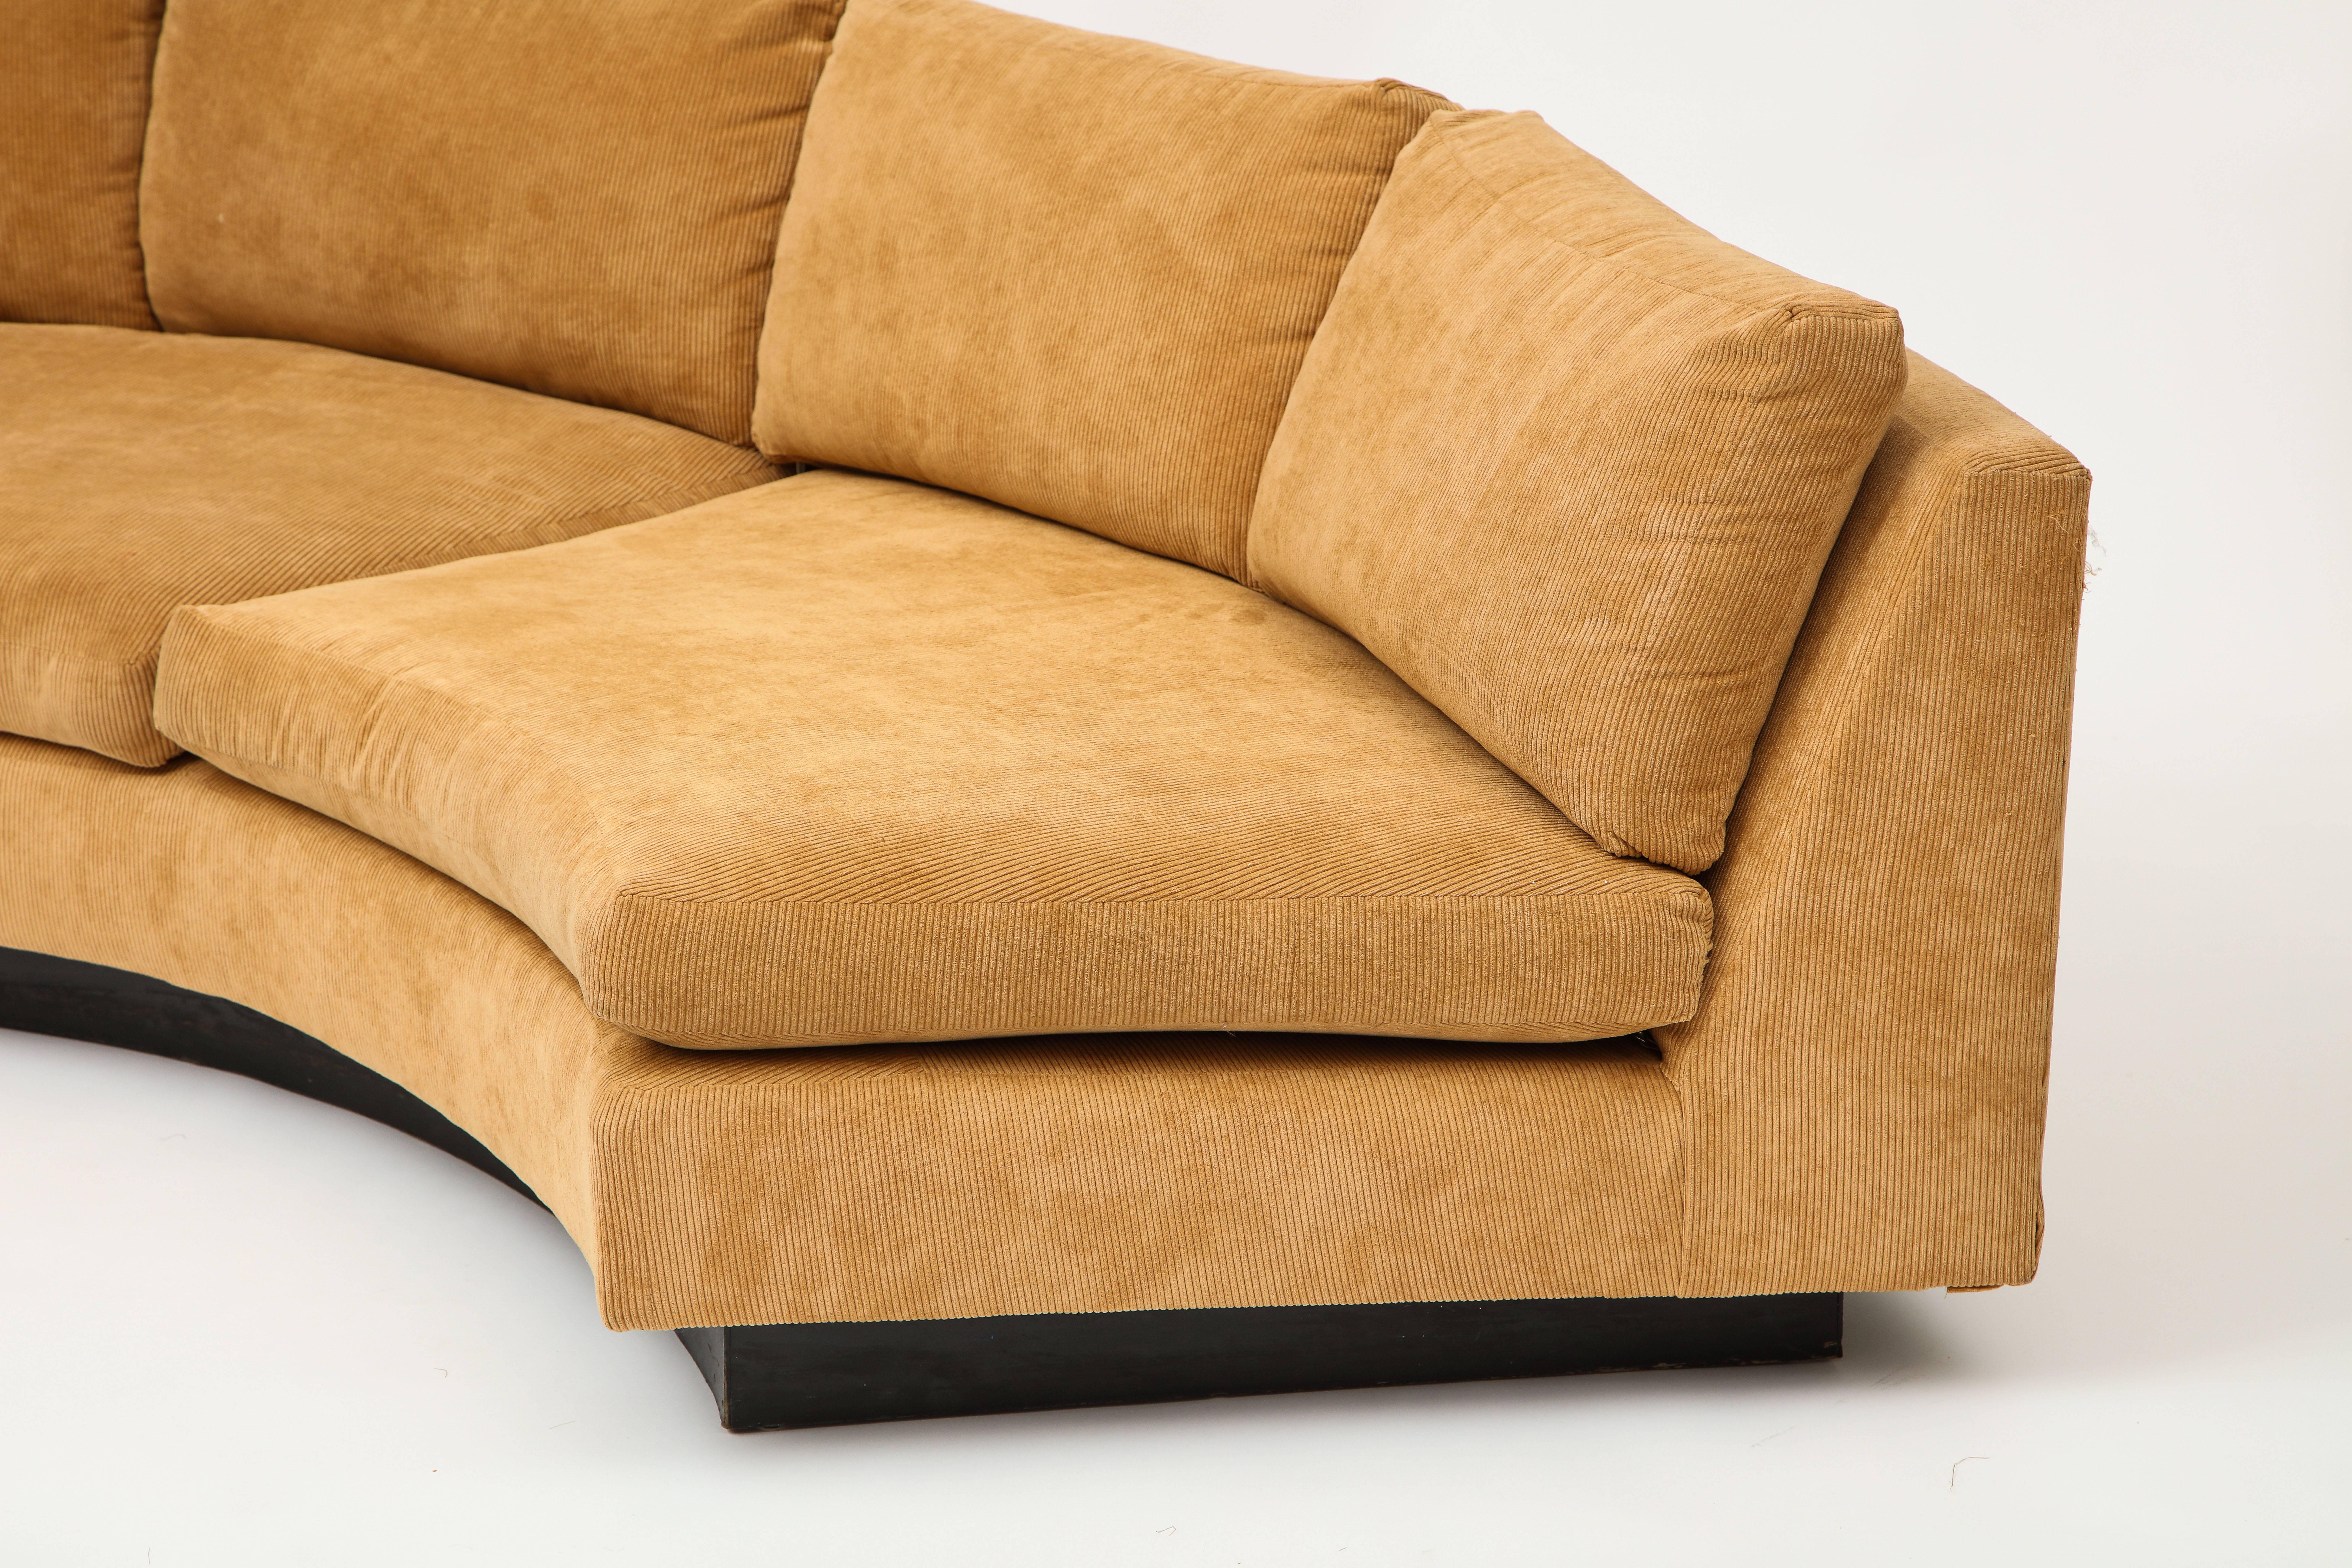 Milo Baughman halbkreisförmige zweiteilige Sofa Karamell Kord Polsterung:: 1980er

Awesome Sofa-Set. Zwei Teile:: die entweder zusammengefügt werden können:: um einen Halbkreis zu bilden:: oder einander gegenübergestellt werden können:: um eine